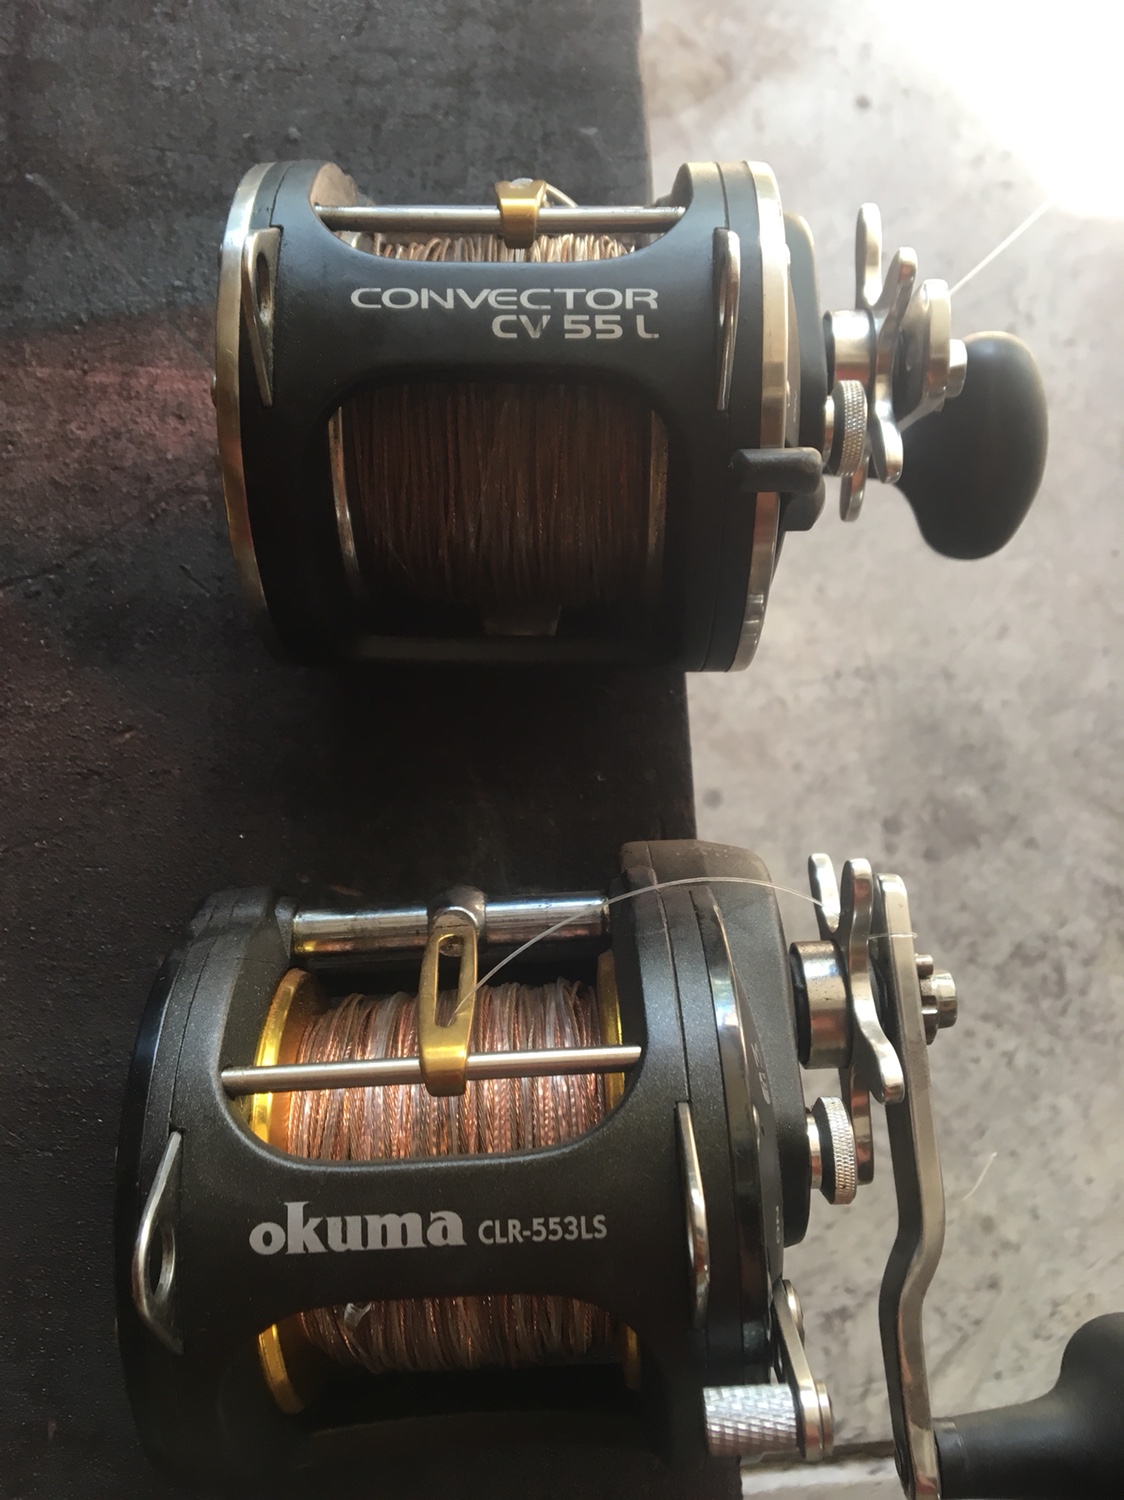 Okuma CLR 553 LS and Okuma Convector CV55L copper reels